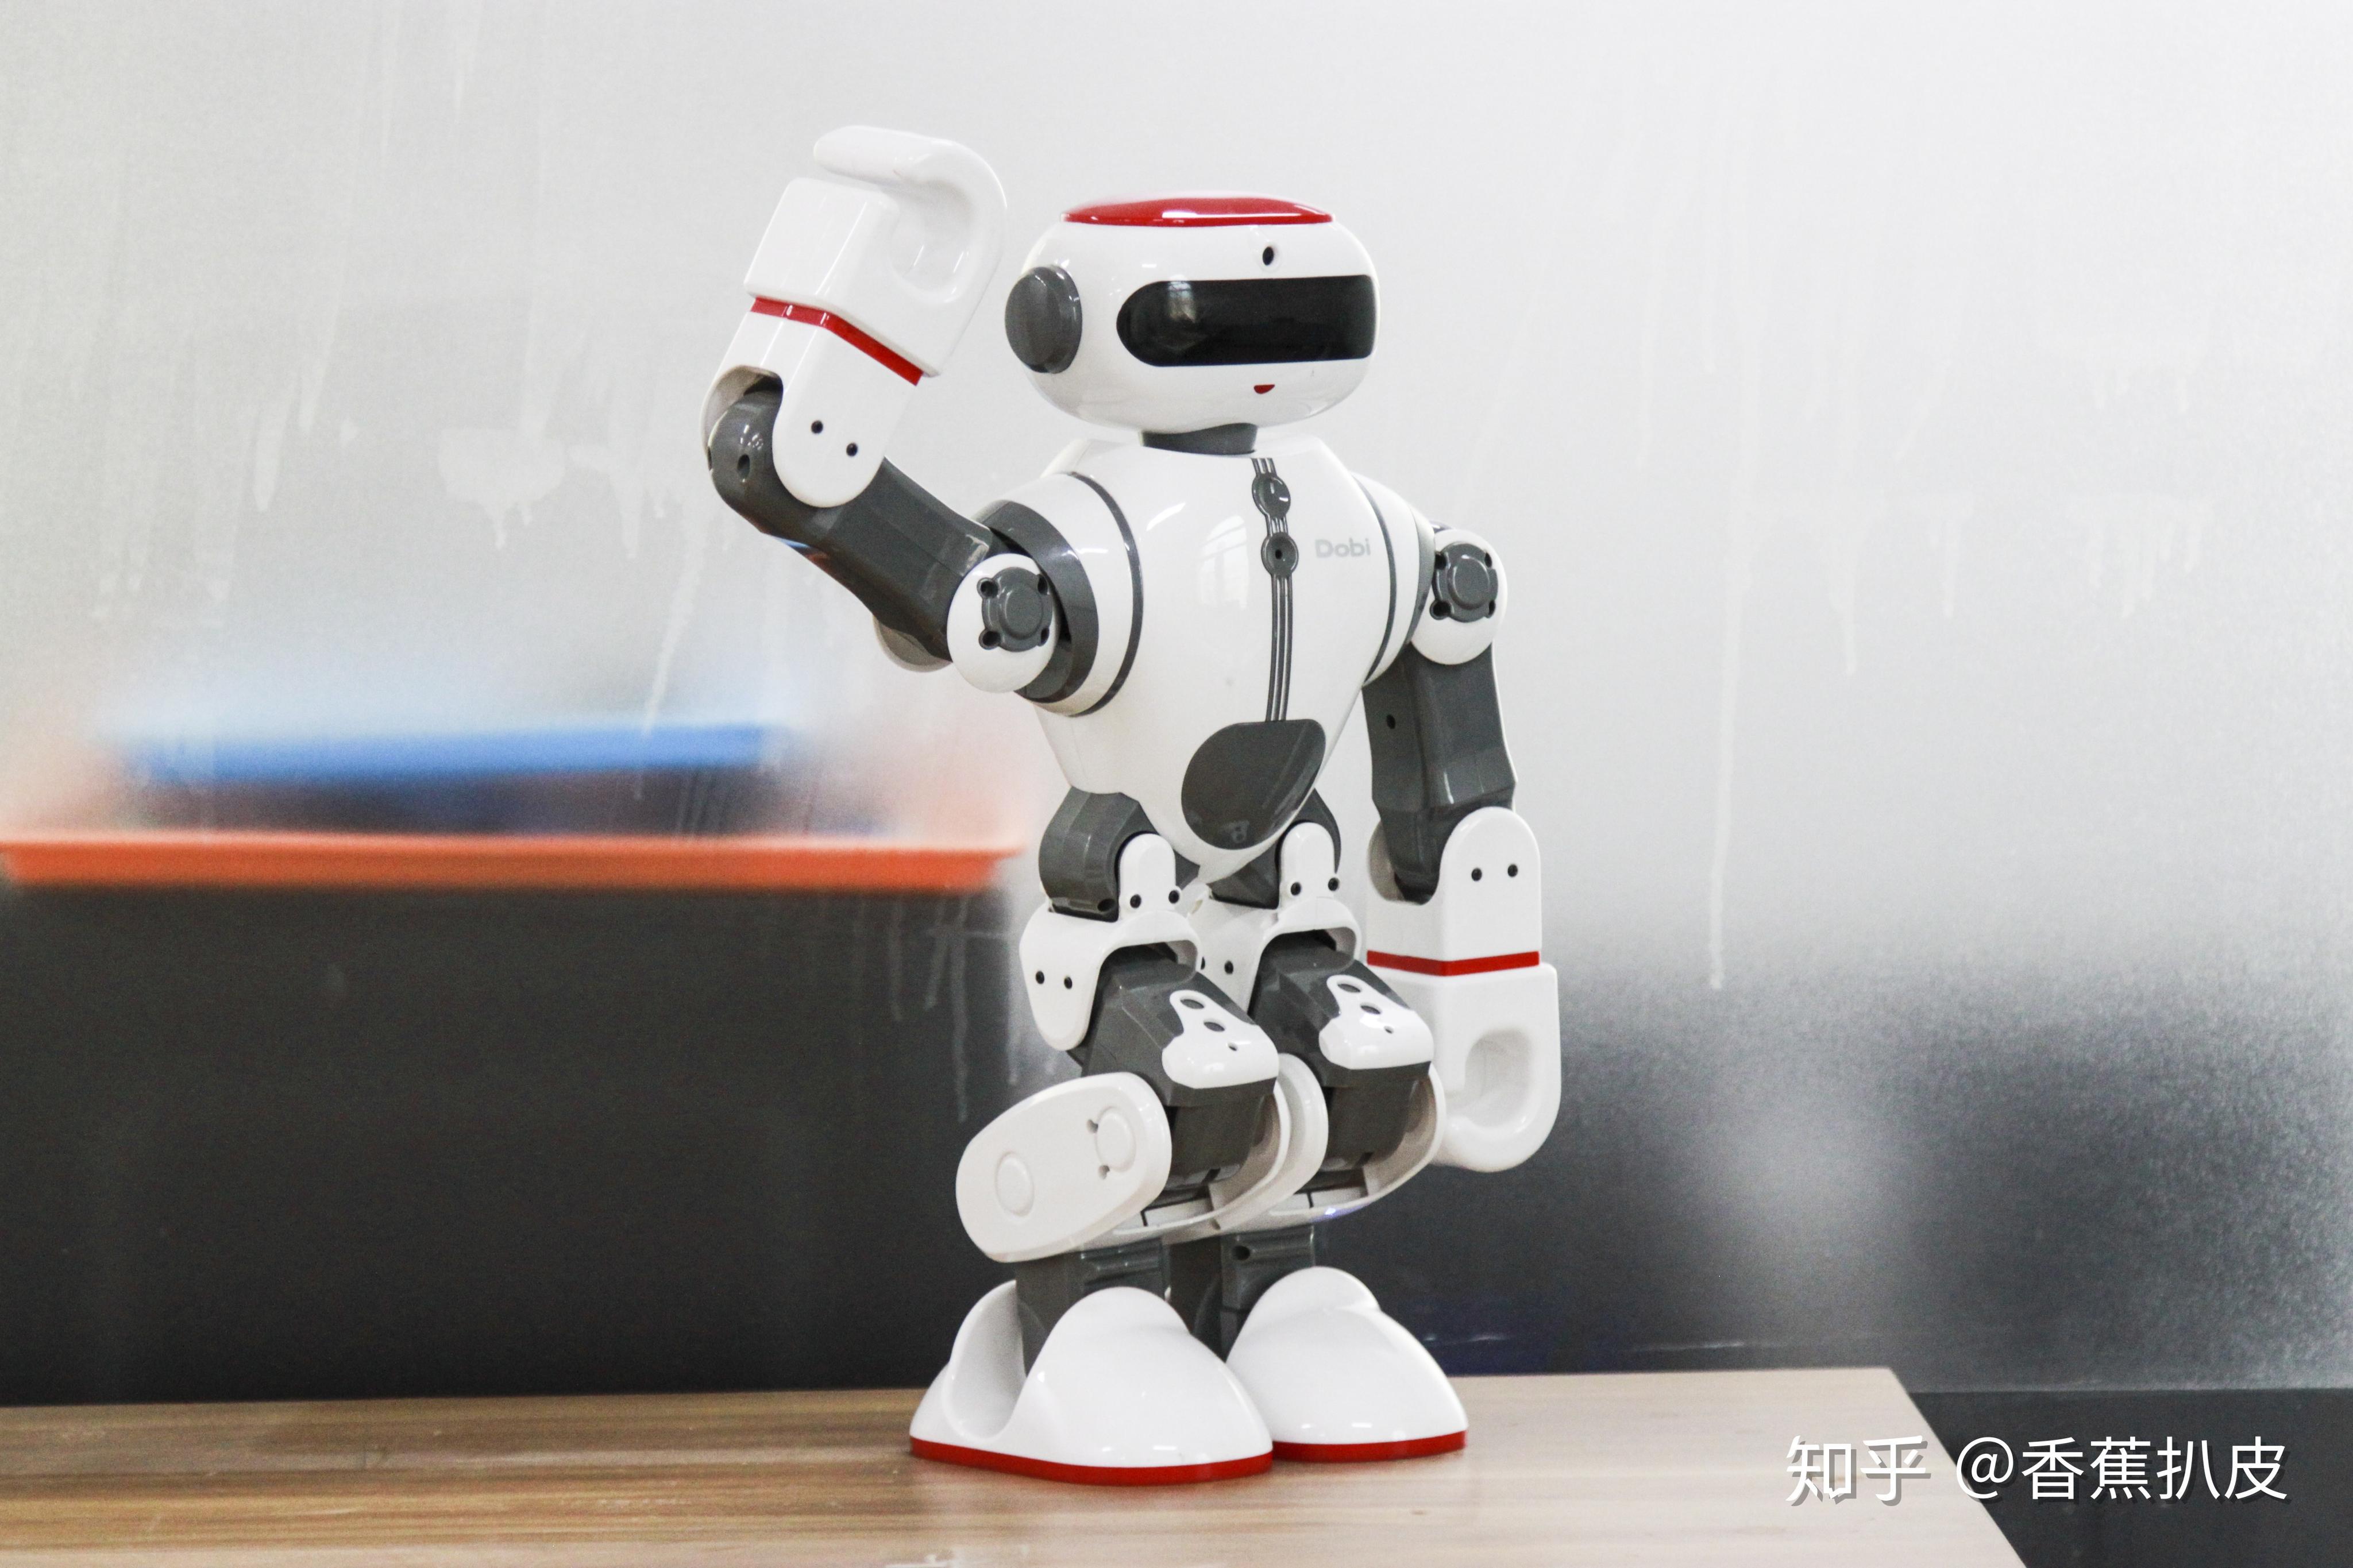 萝卜立方robo3:人形机器人dobi——科技新宠